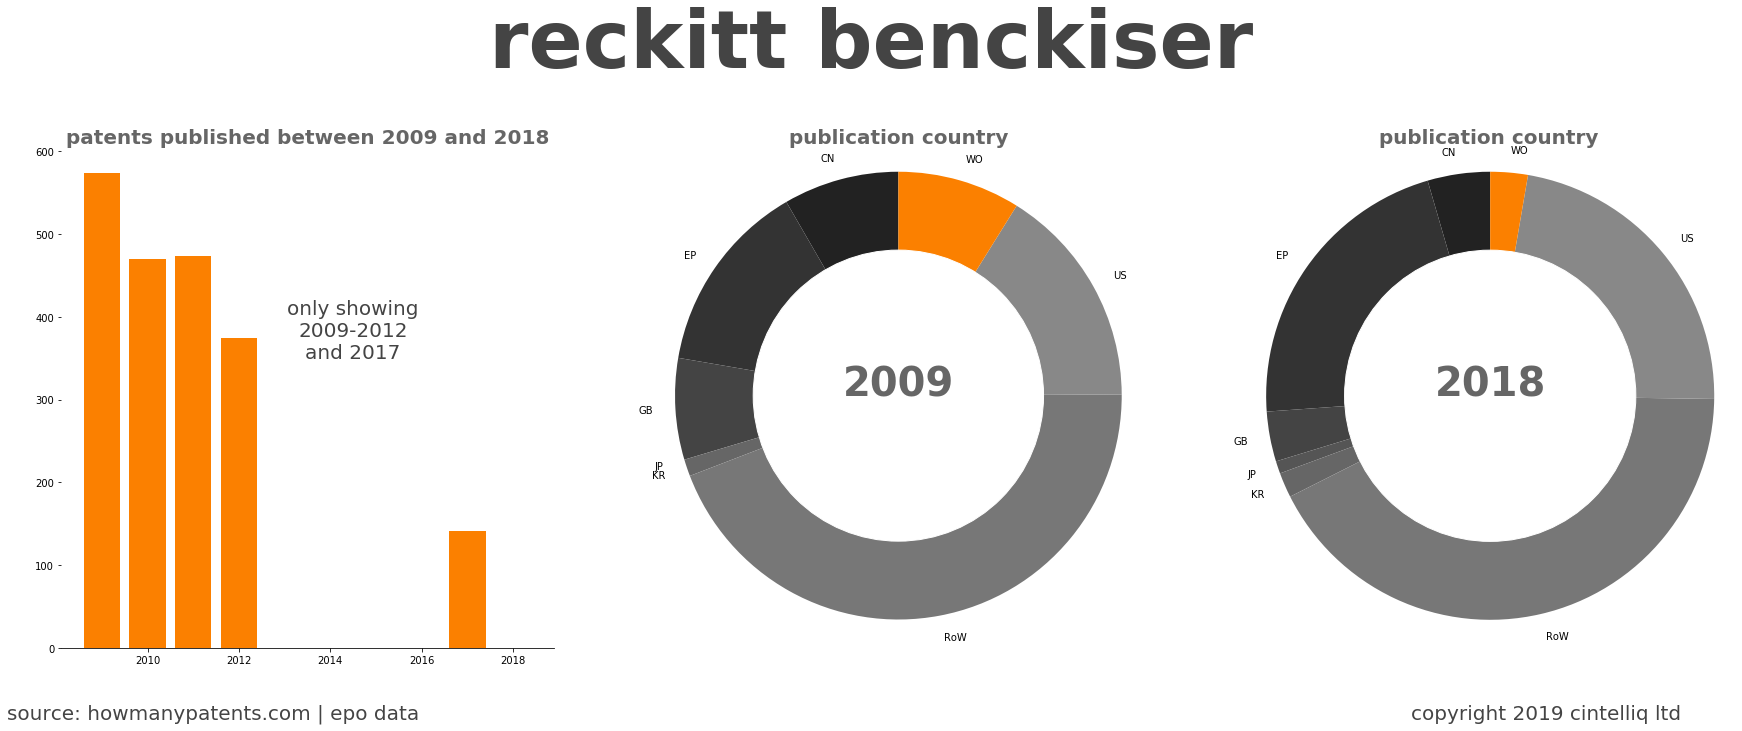 summary of patents for Reckitt Benckiser